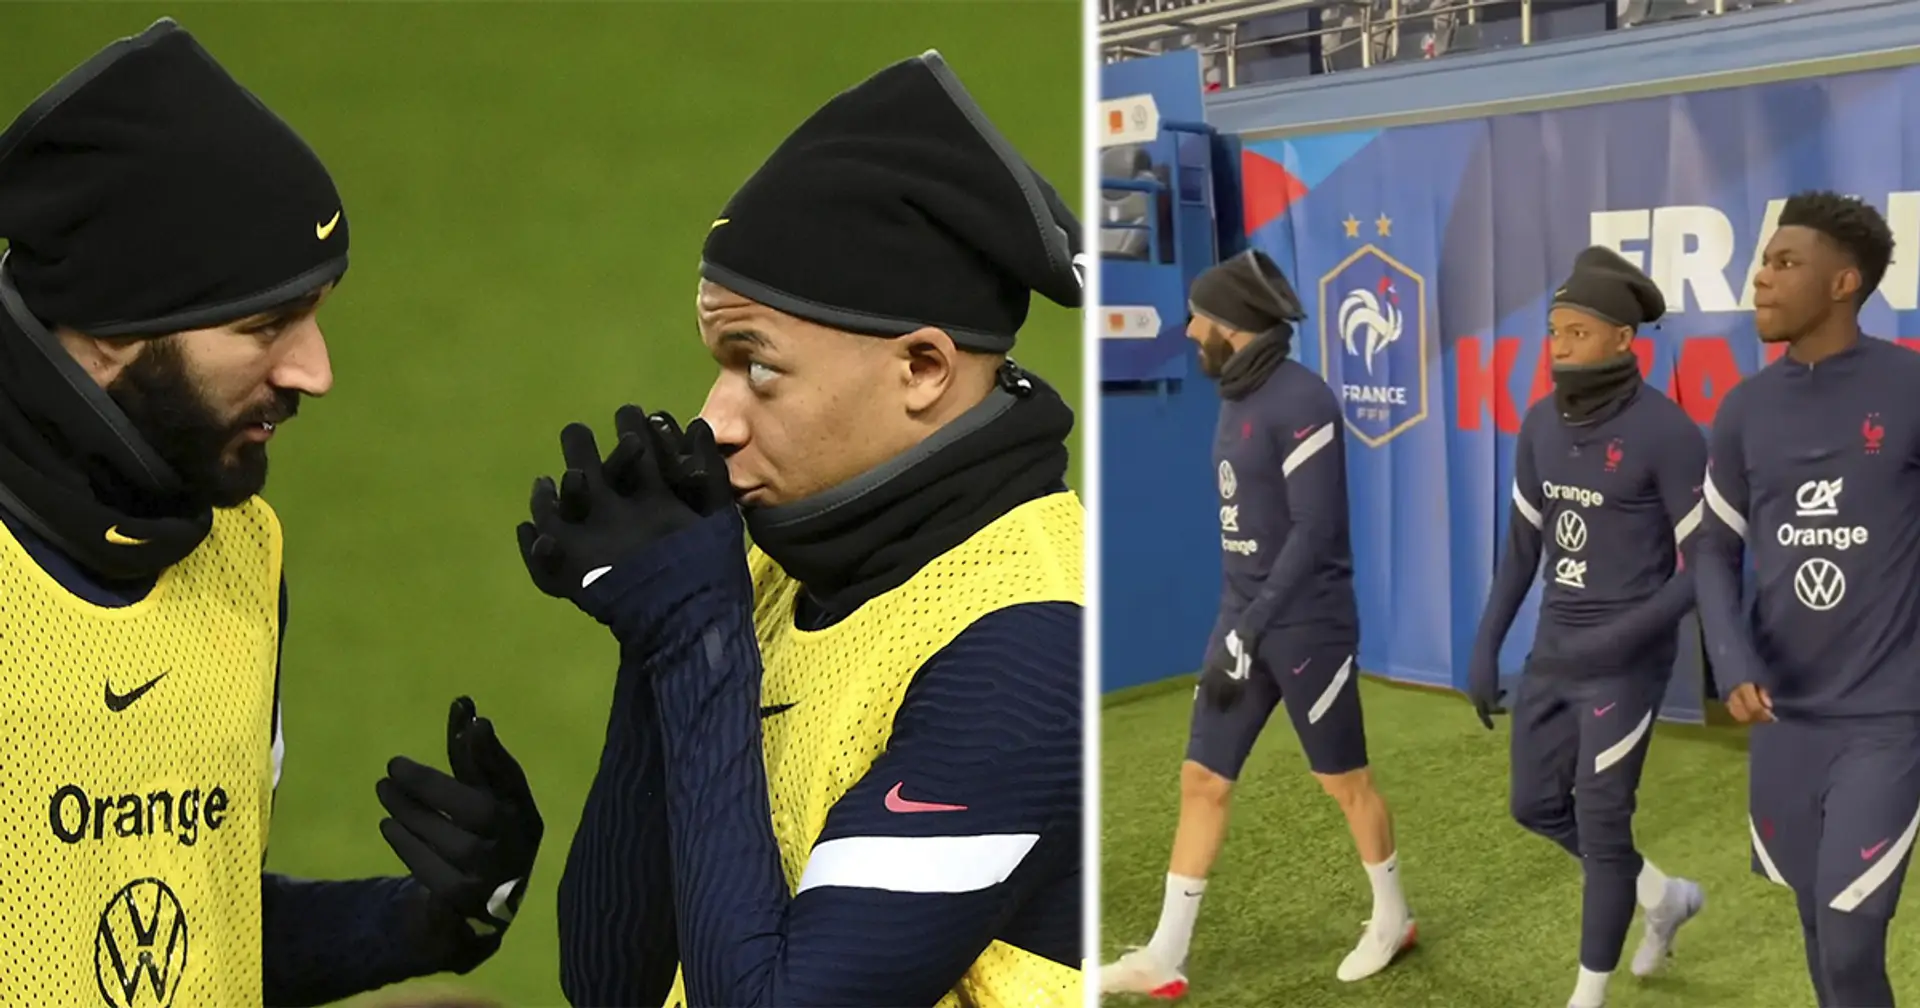 "Il lui dit comment partir du PSG": les nouvelles photos de Mbappé et Benzema deviennent virales